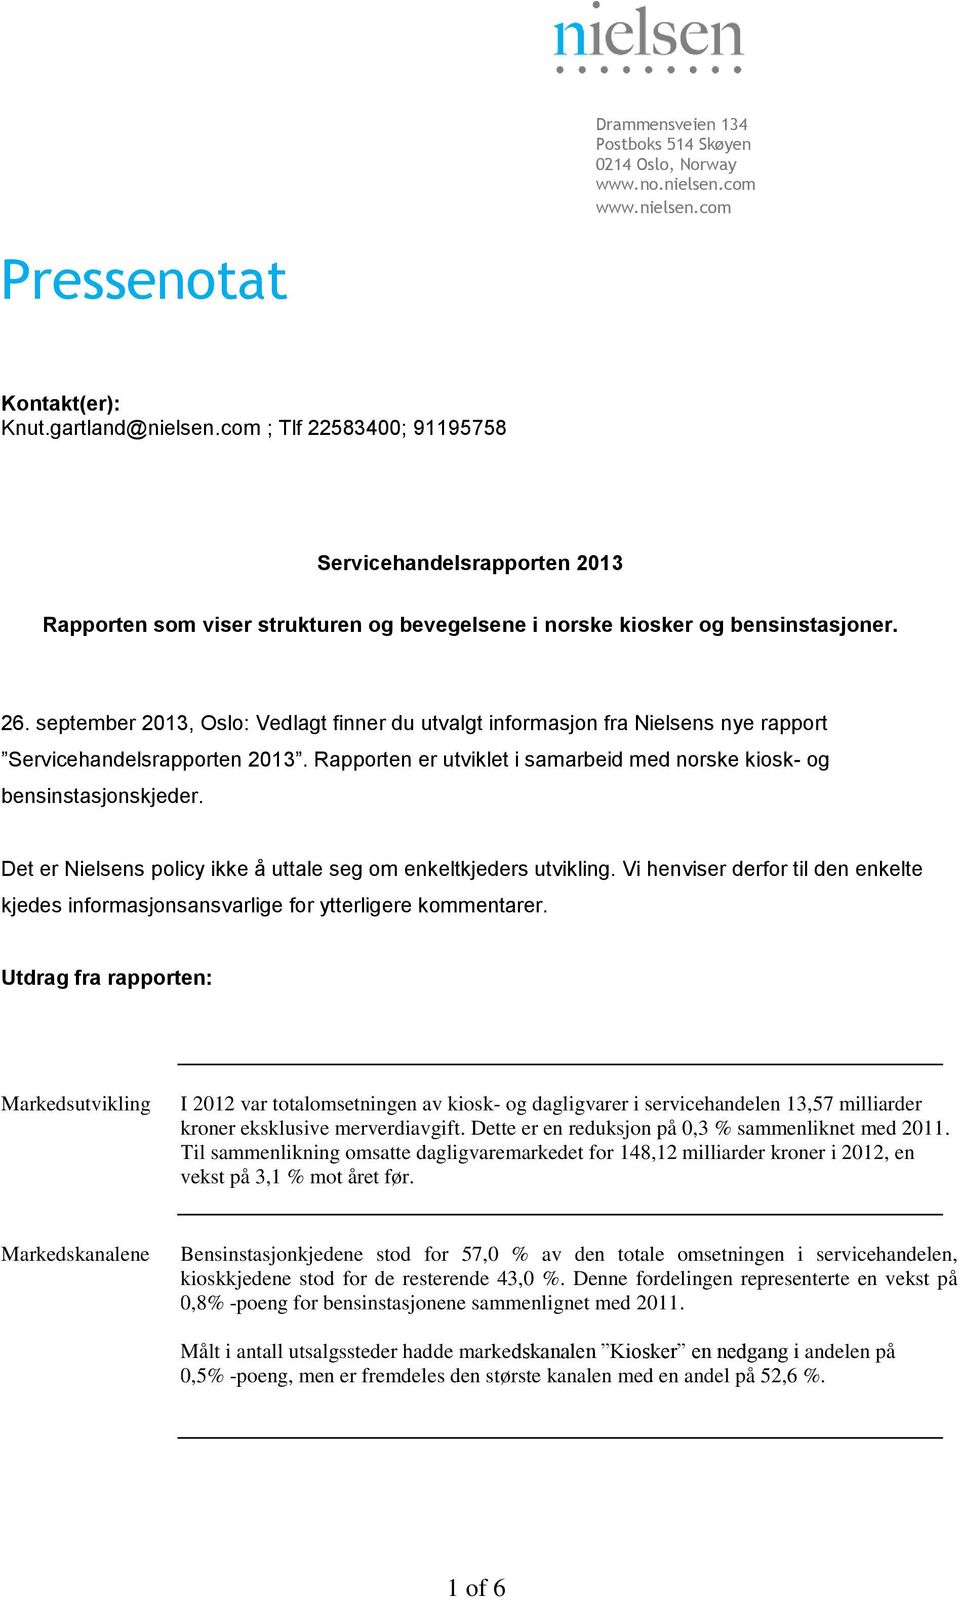 september 2013, Oslo: Vedlagt finner du utvalgt informasjon fra Nielsens nye rapport Servicehandelsrapporten 2013. Rapporten er utviklet i samarbeid med norske kiosk- og bensinstasjonskjeder.